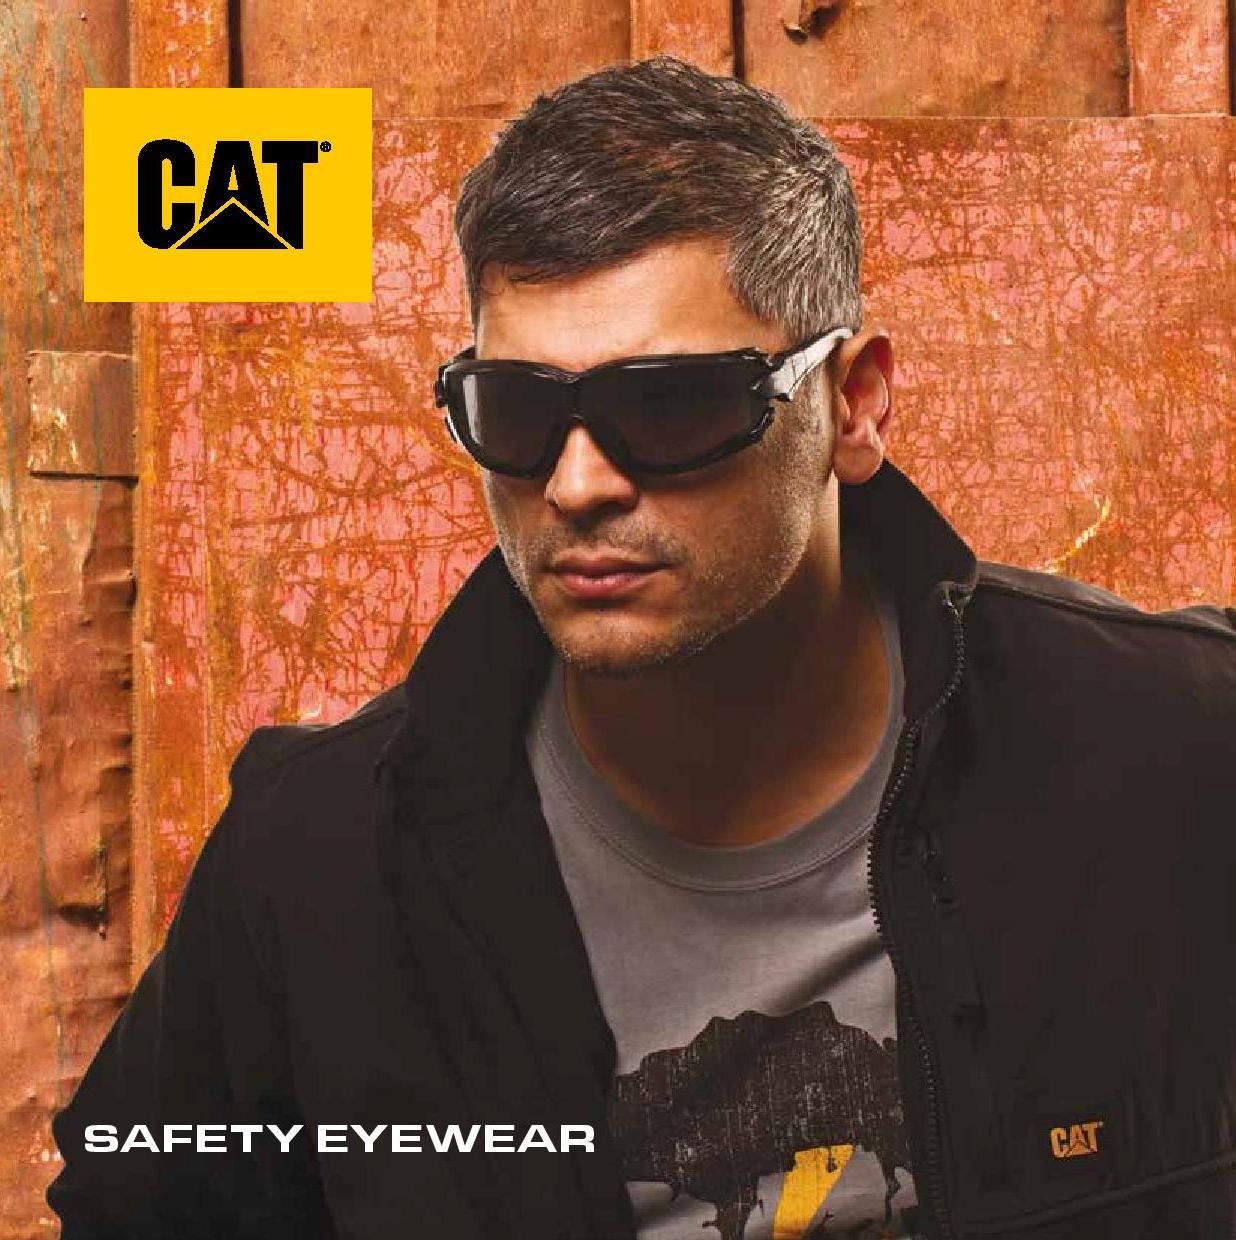 CAT SAFETY EYEWEAR CATERPILLAR DIGGER Protective Anti-Scratch Work Sunglas 